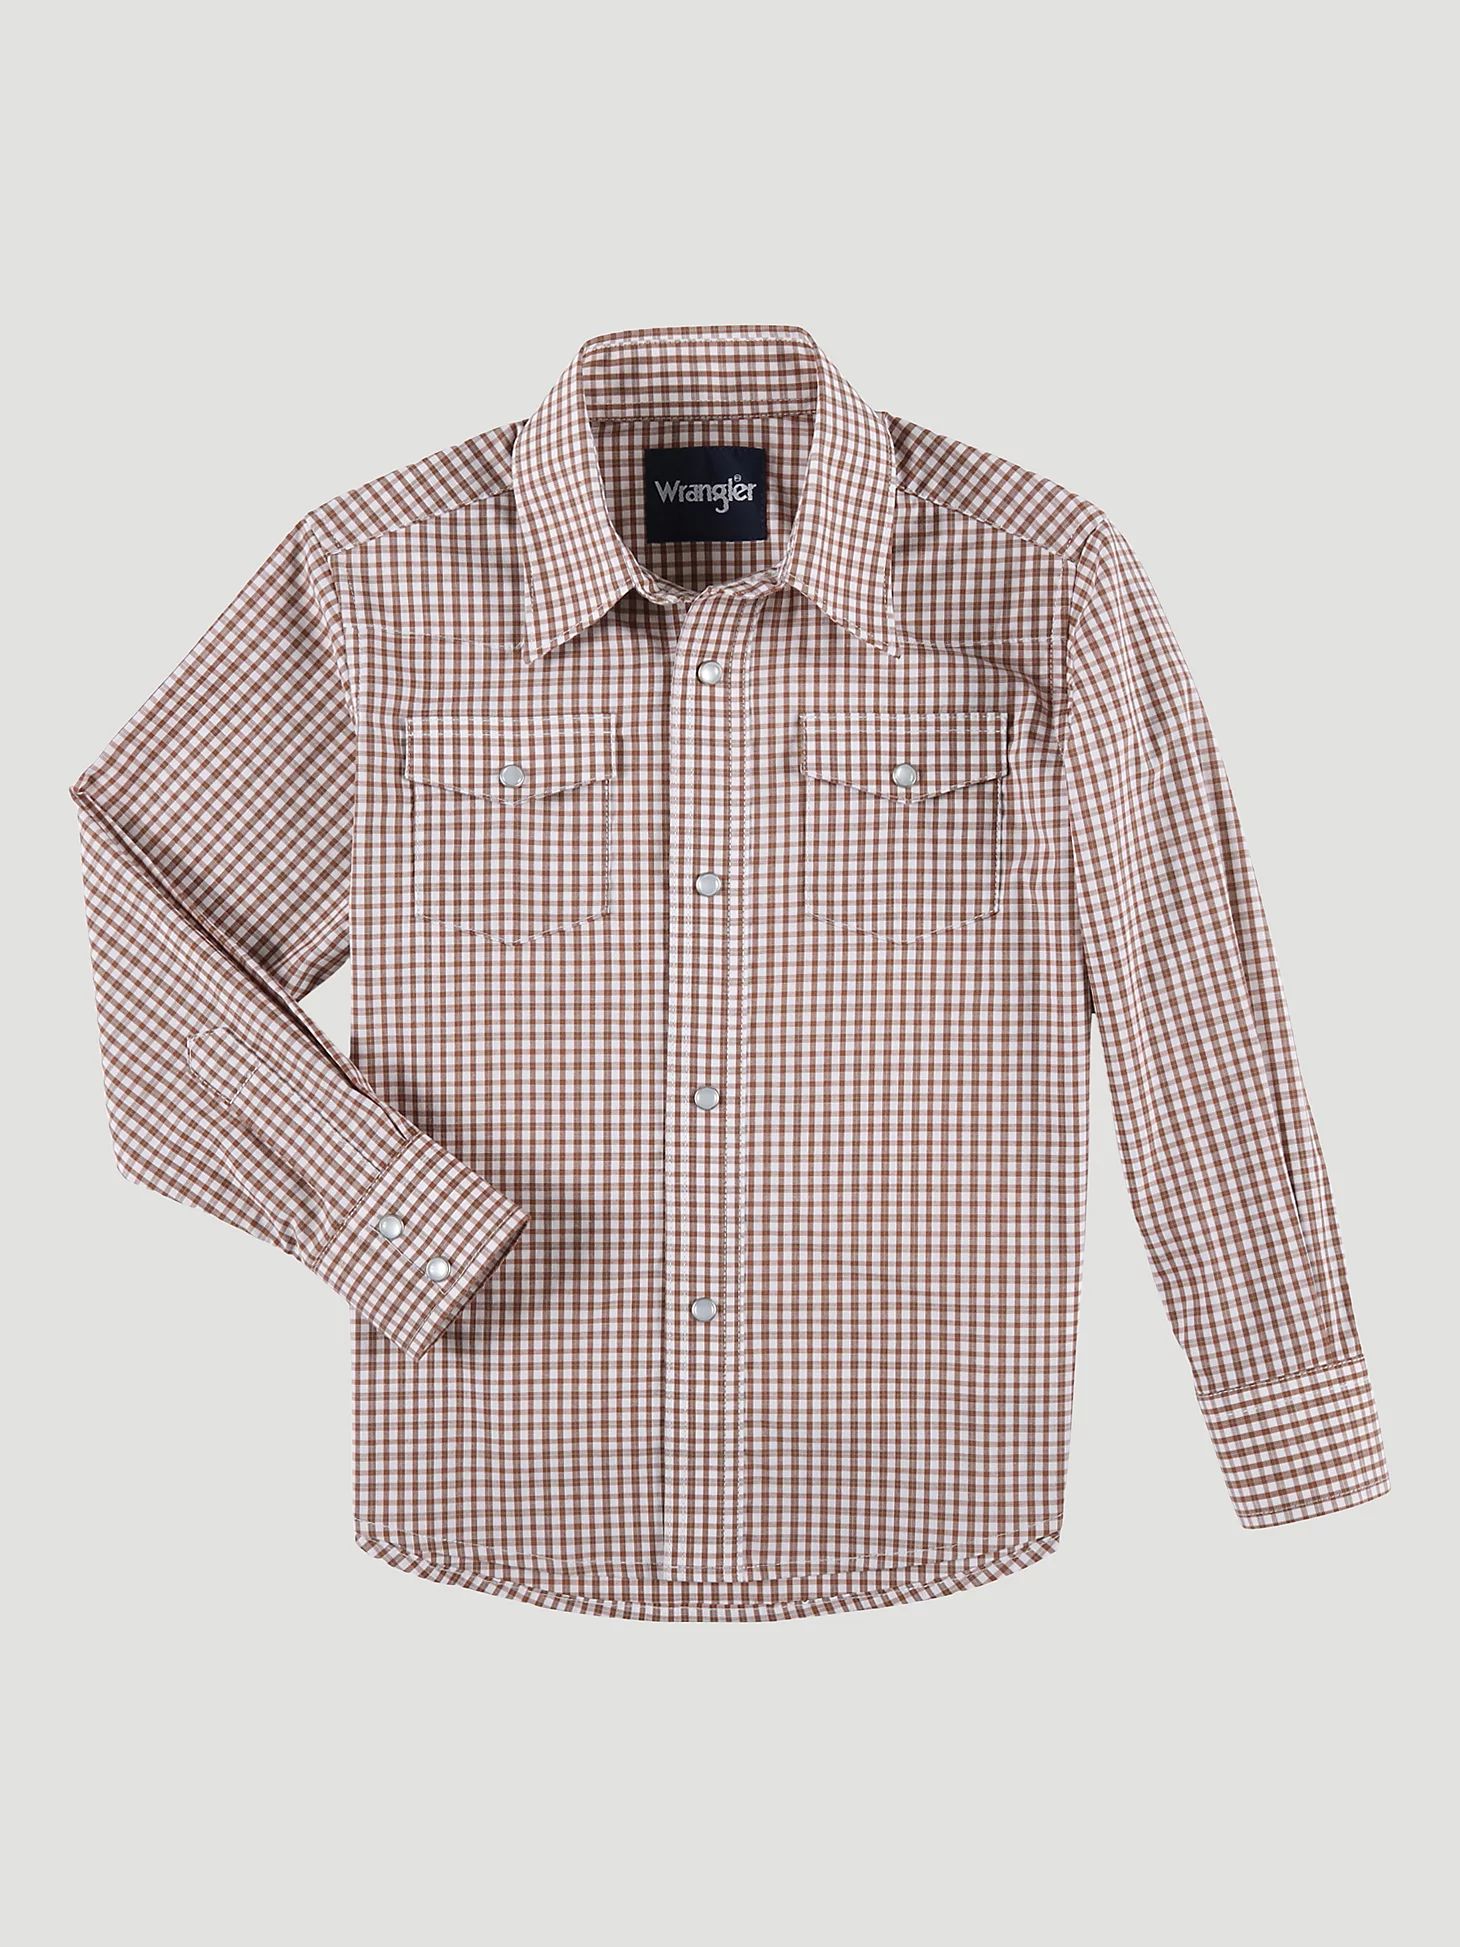 Boy's Long Sleeve Wrinkle Resist Western Snap Plaid Shirt in Warm Brown | Wrangler